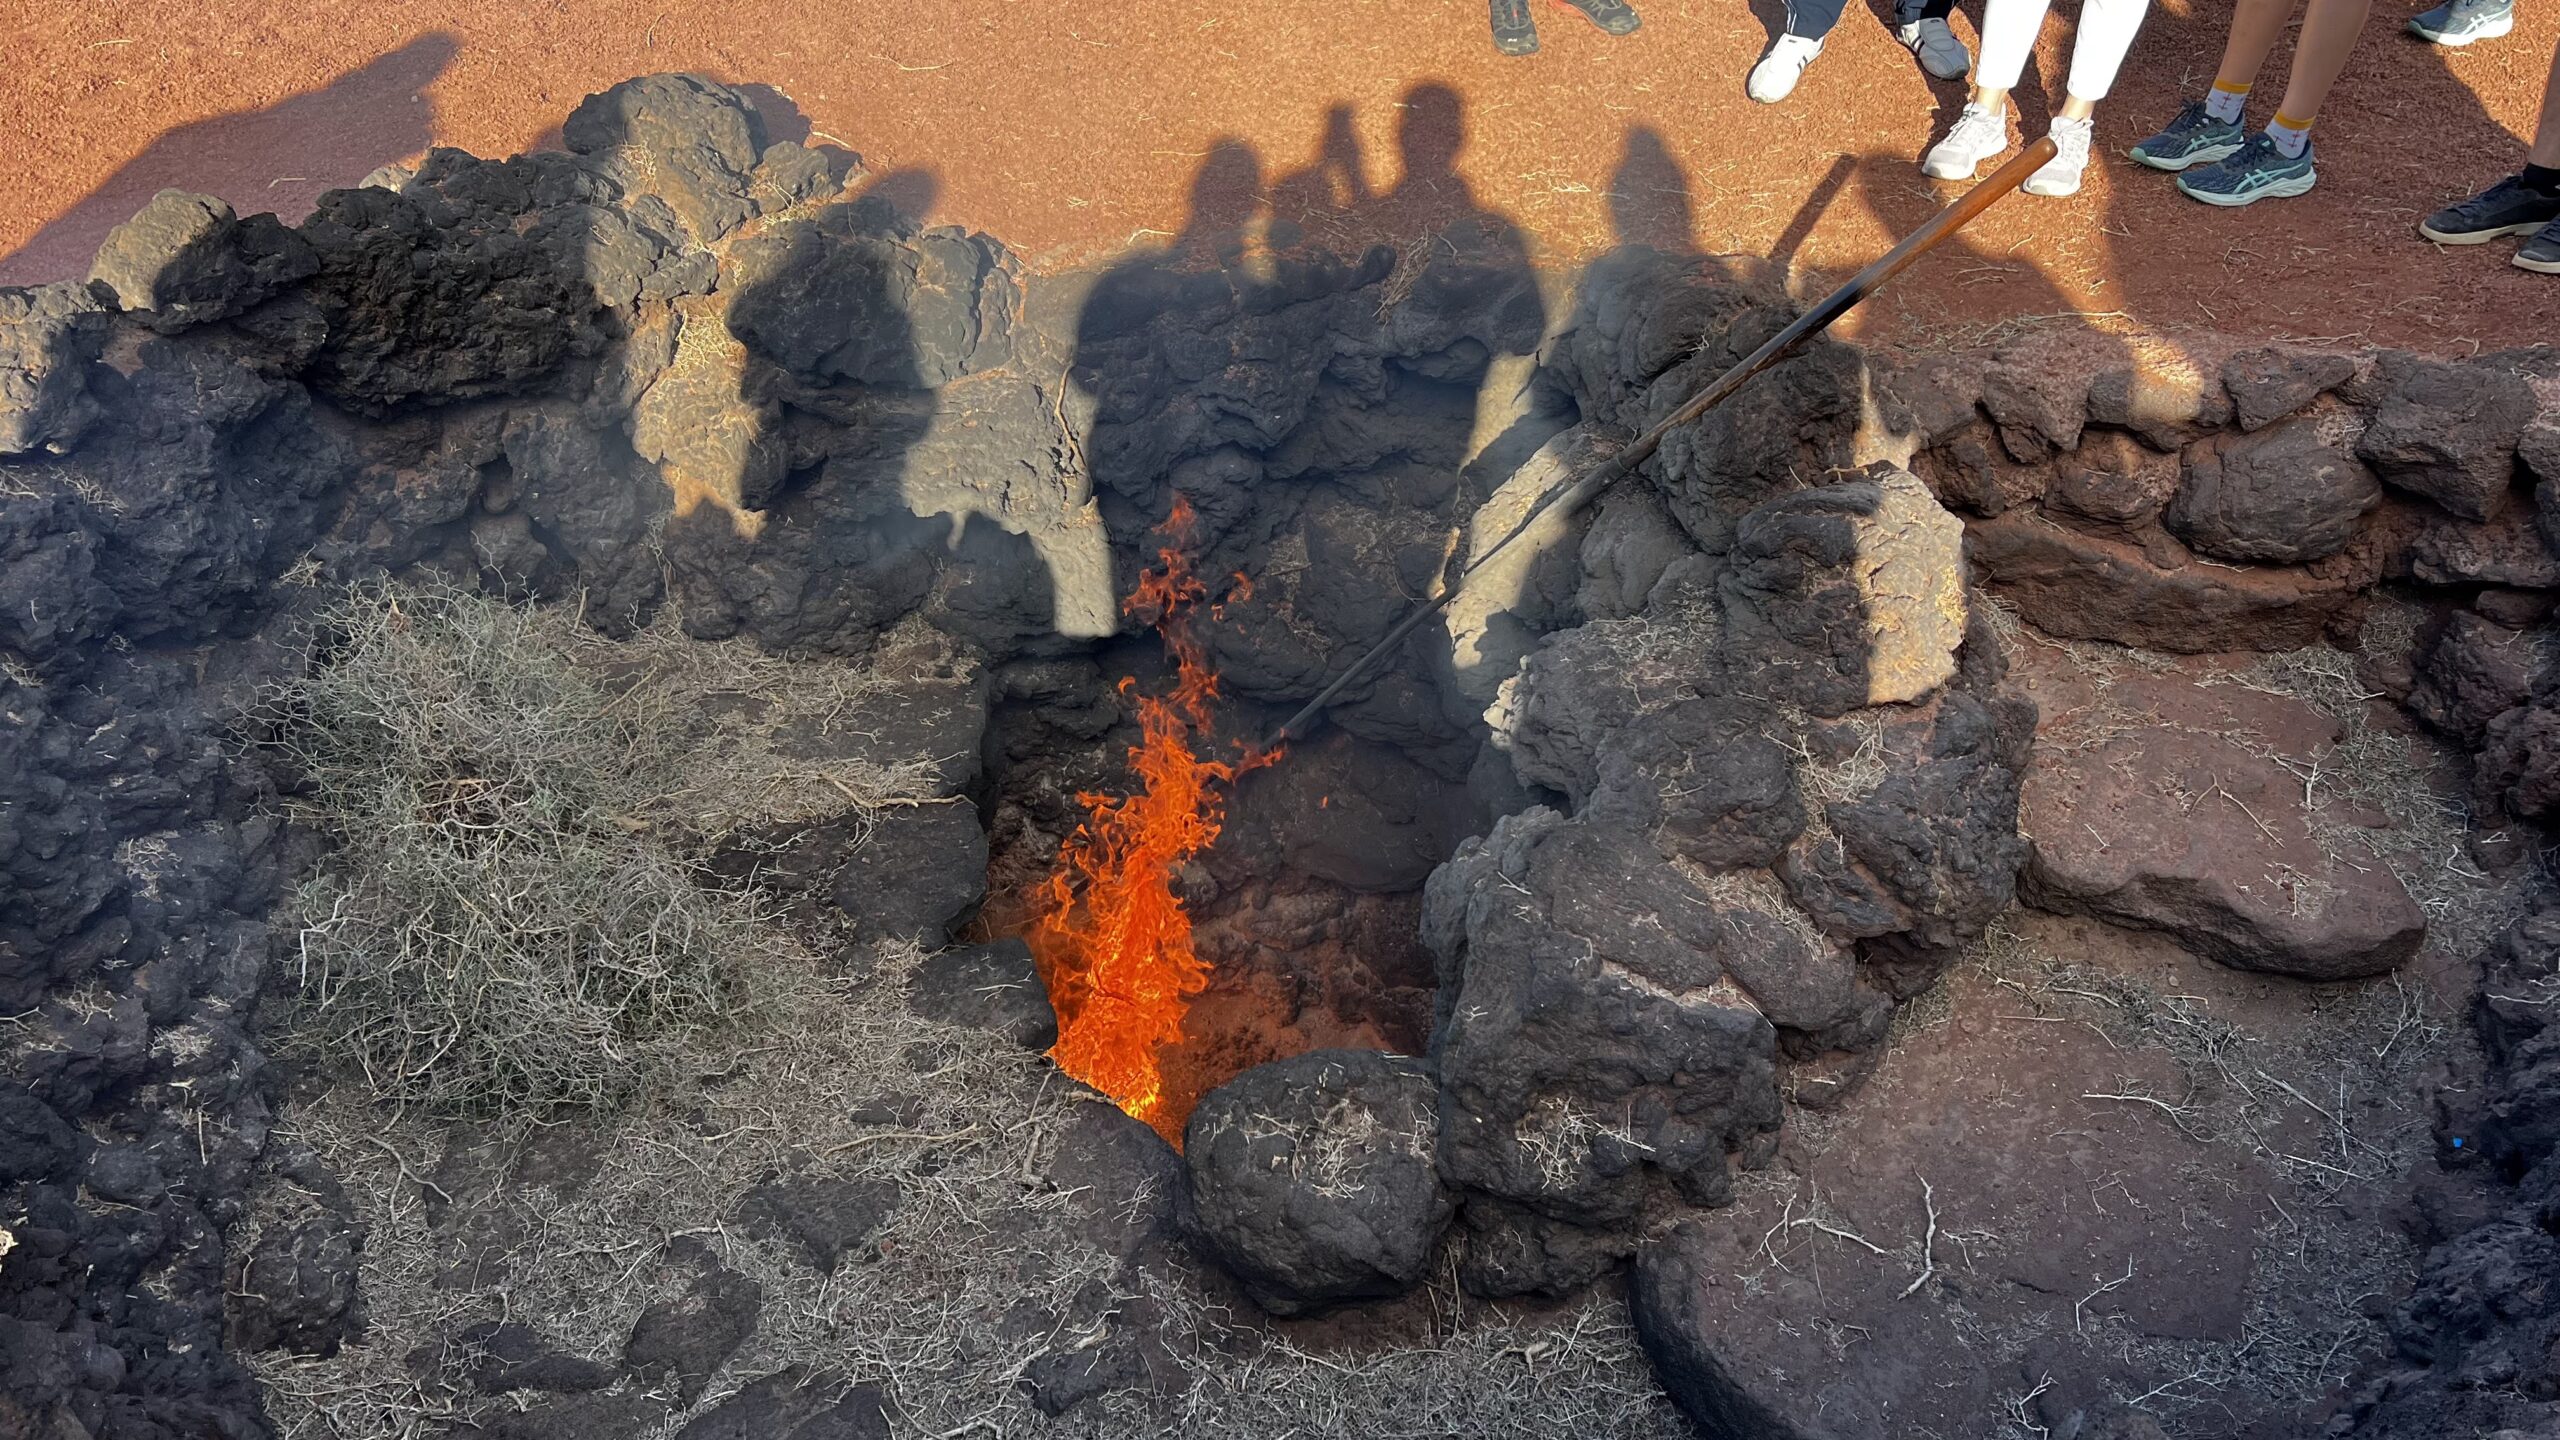 Demostraciones geotérmicas del Islote de Hilario, Parque Nacional del Timanfaya